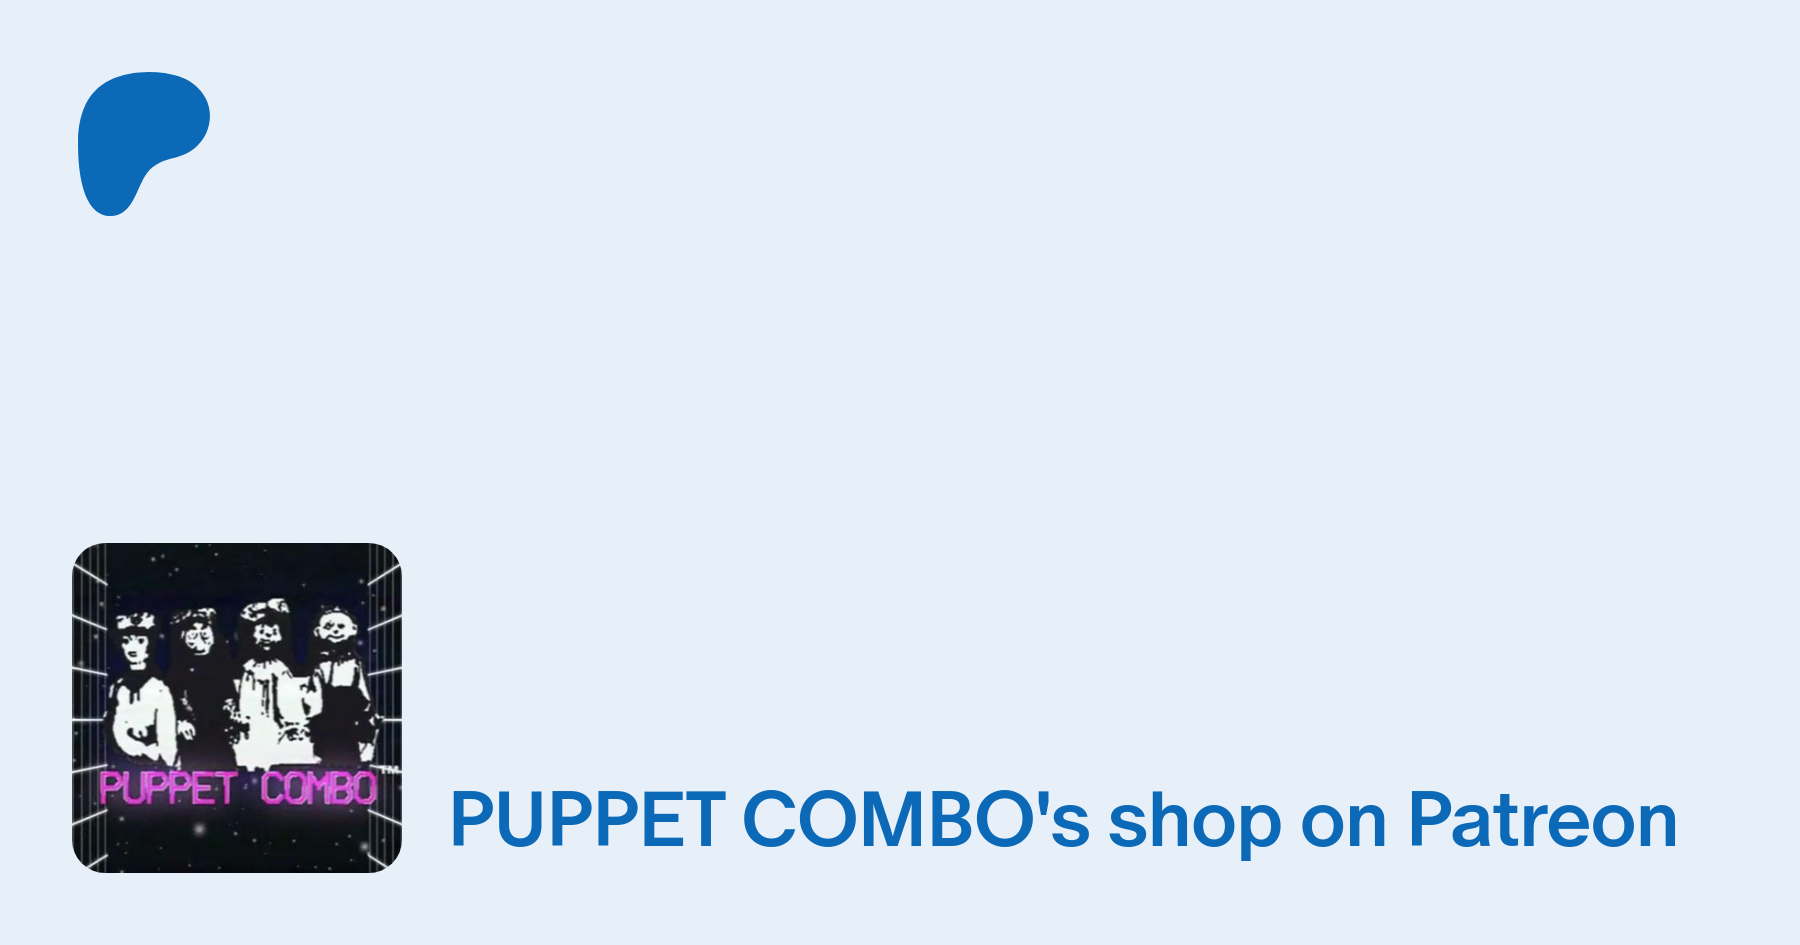 Puppet Combo - Wikipedia